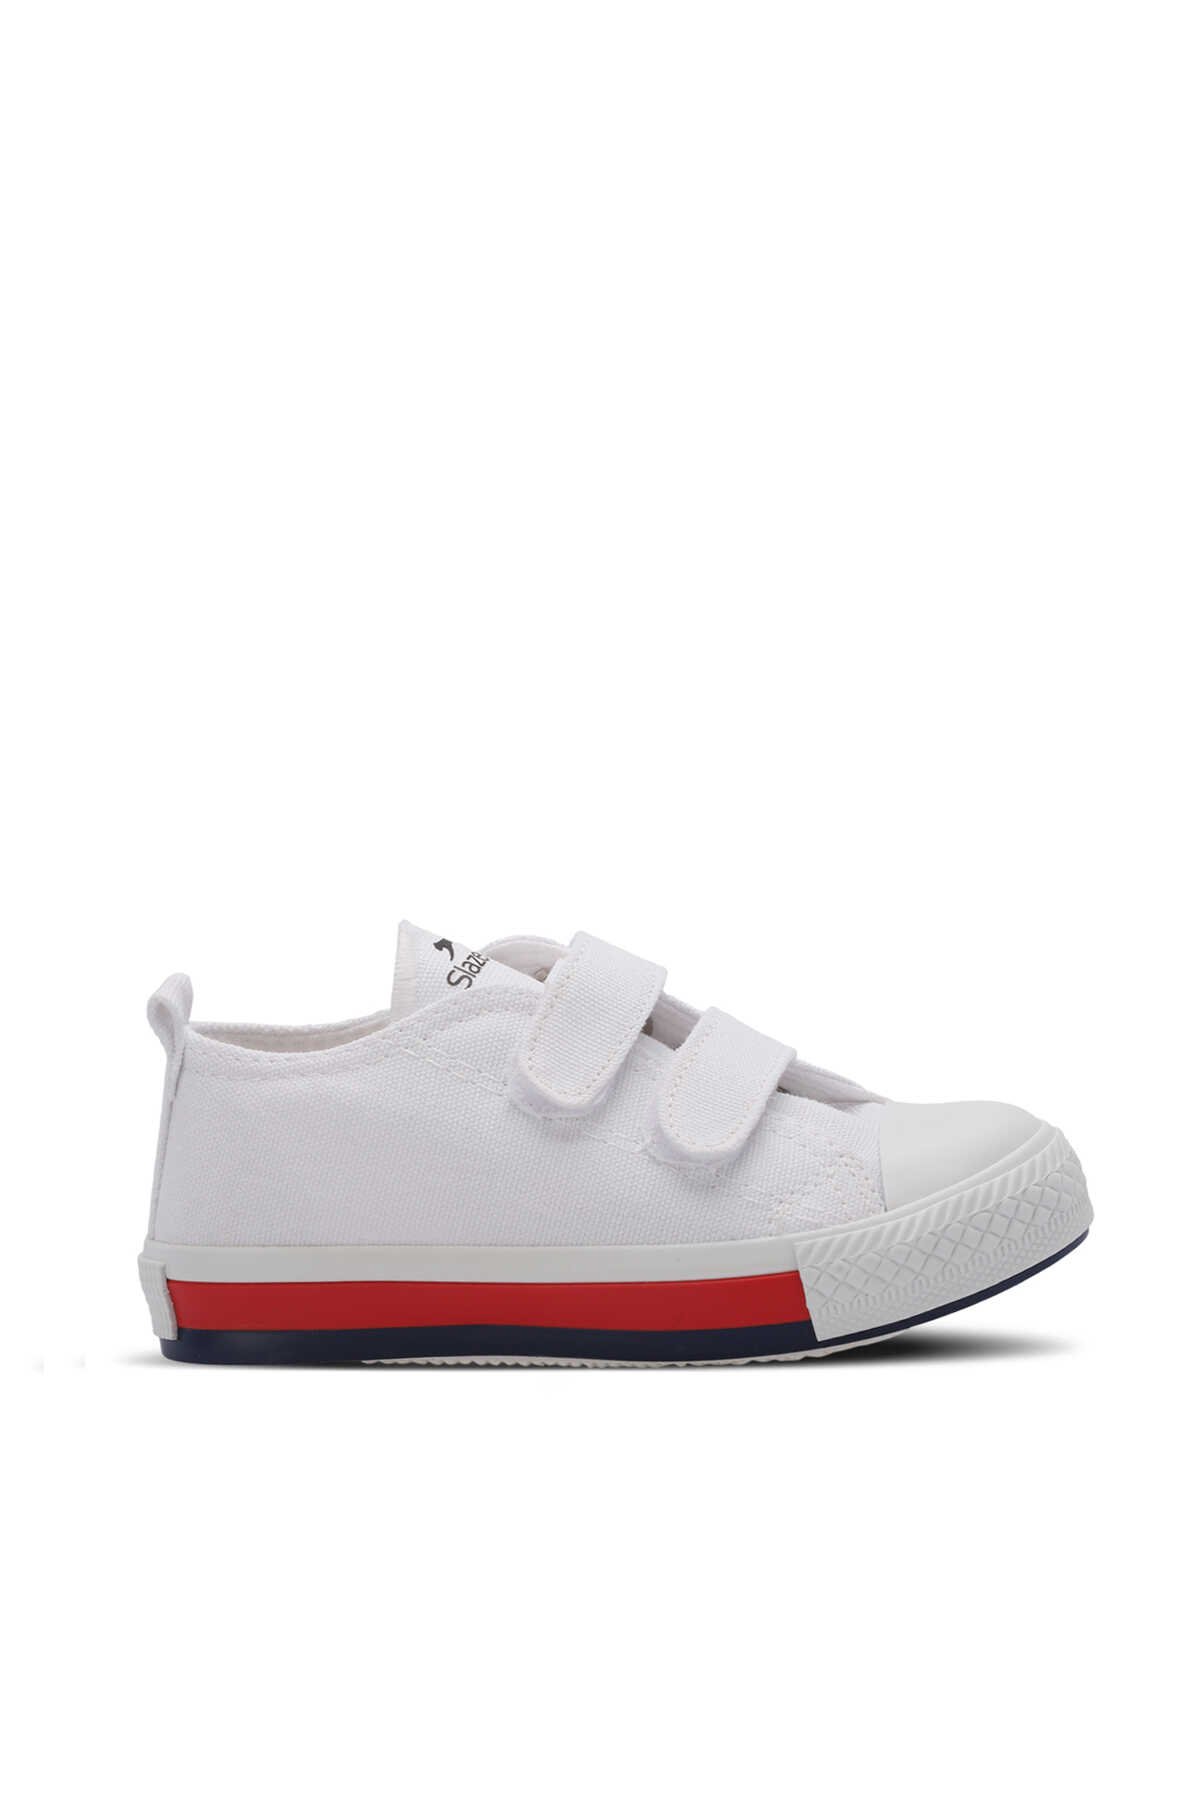 Slazenger - Slazenger KOALA Unisex Çocuk Sneaker Ayakkabı Beyaz